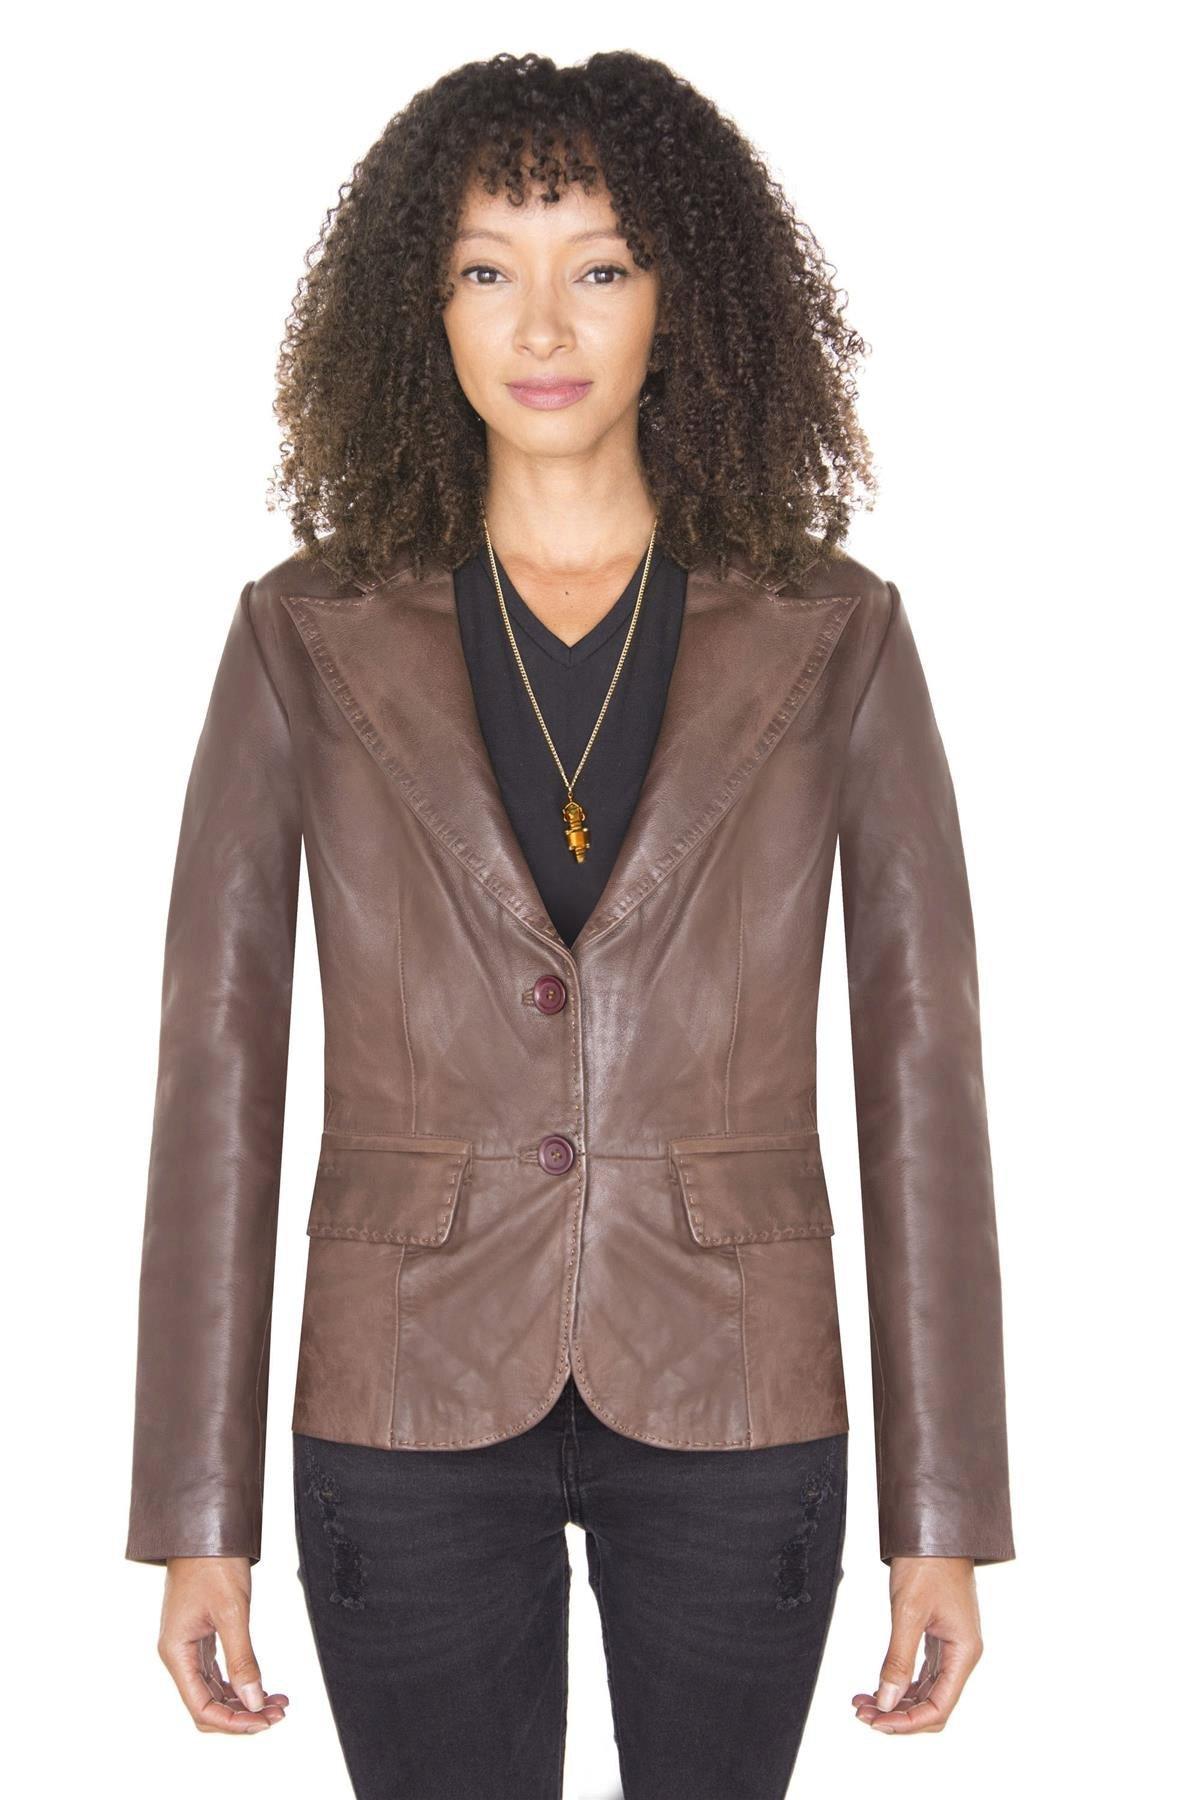 Кожаный пиджак-Seregno Infinity Leather, коричневый